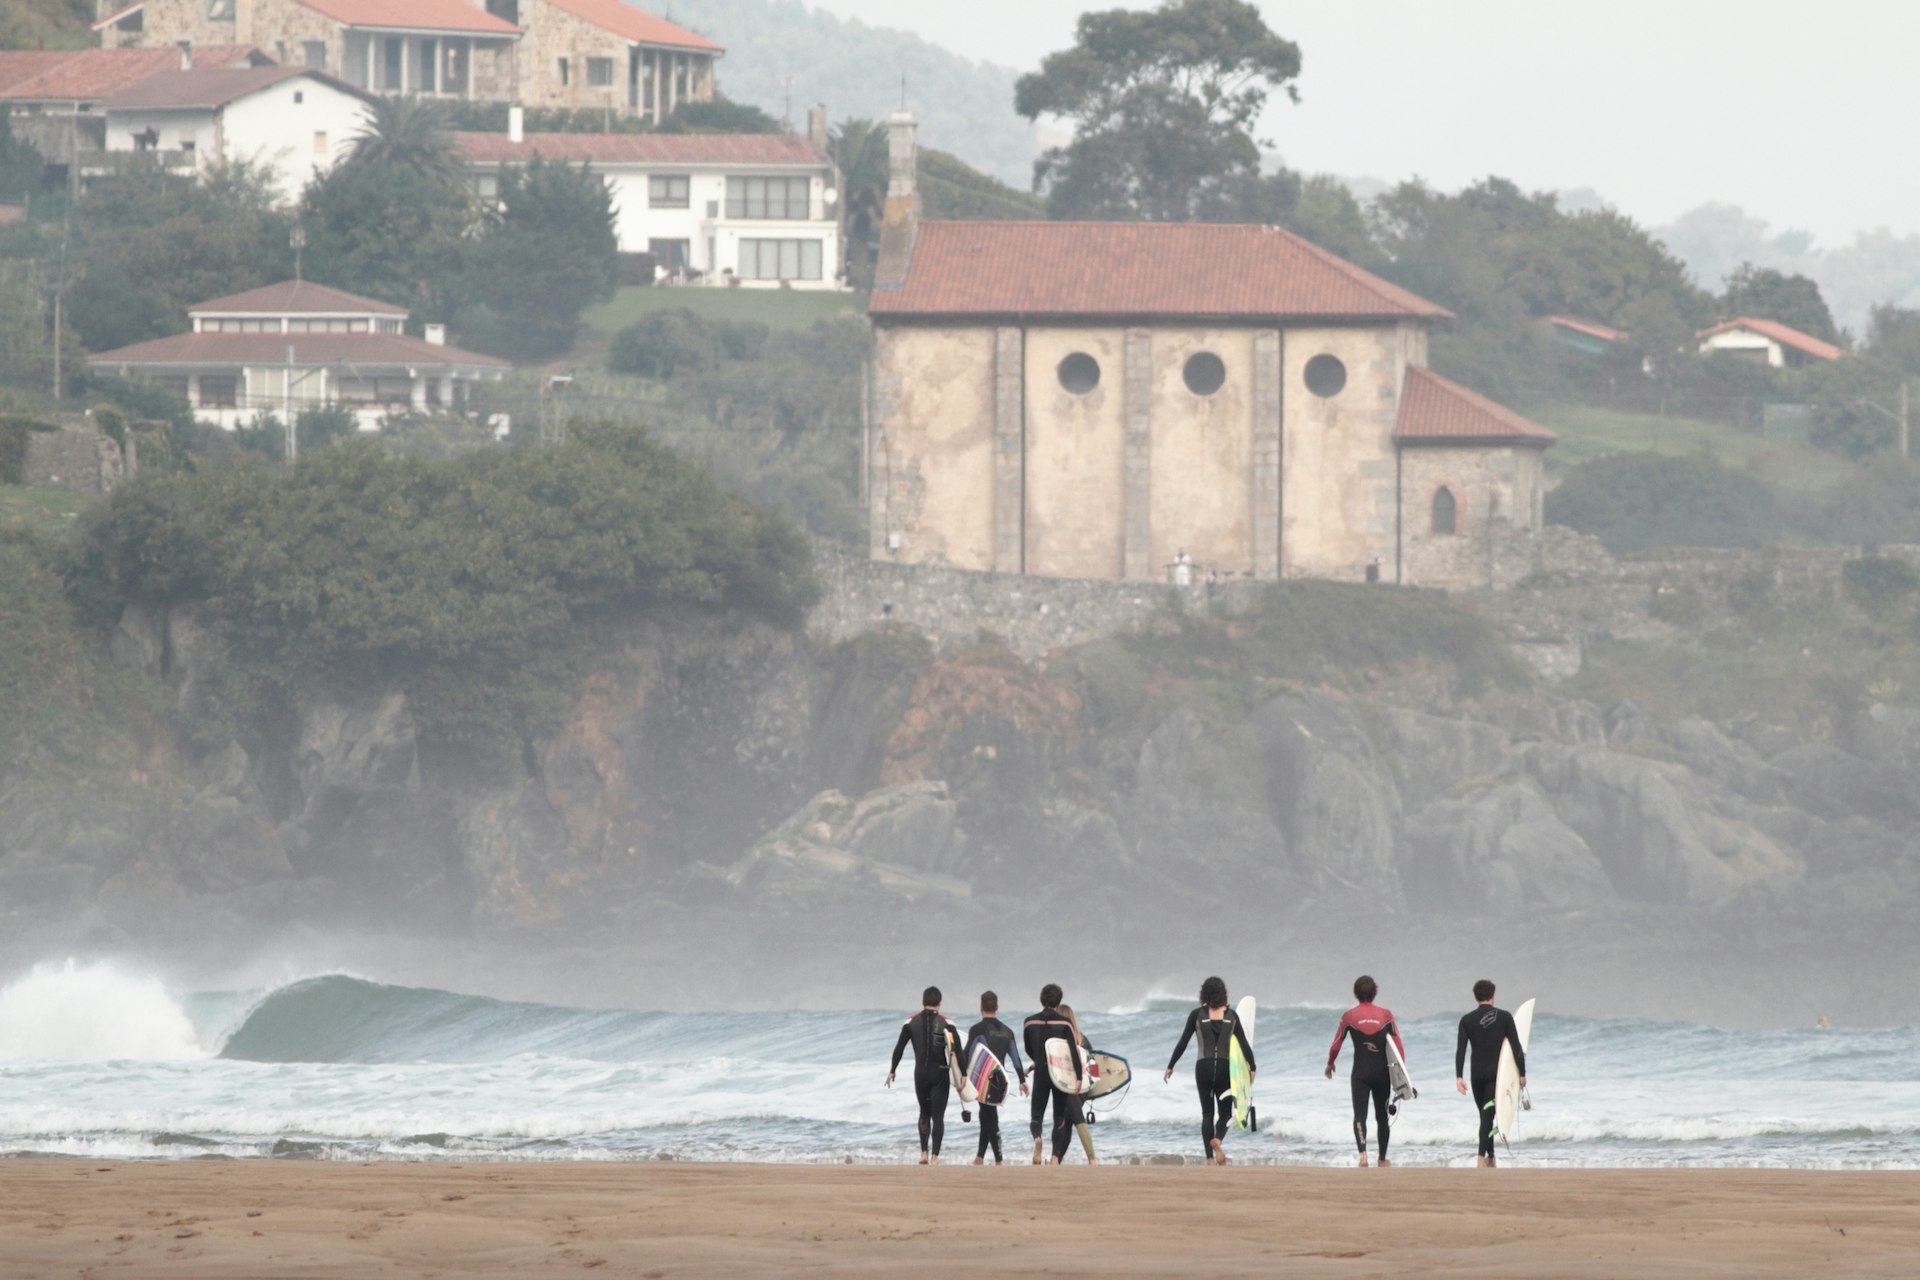 Um grupo de surfistas carregando pranchas caminha em direção às ondas.  Uma grande igreja e casas alinham-se na encosta distante